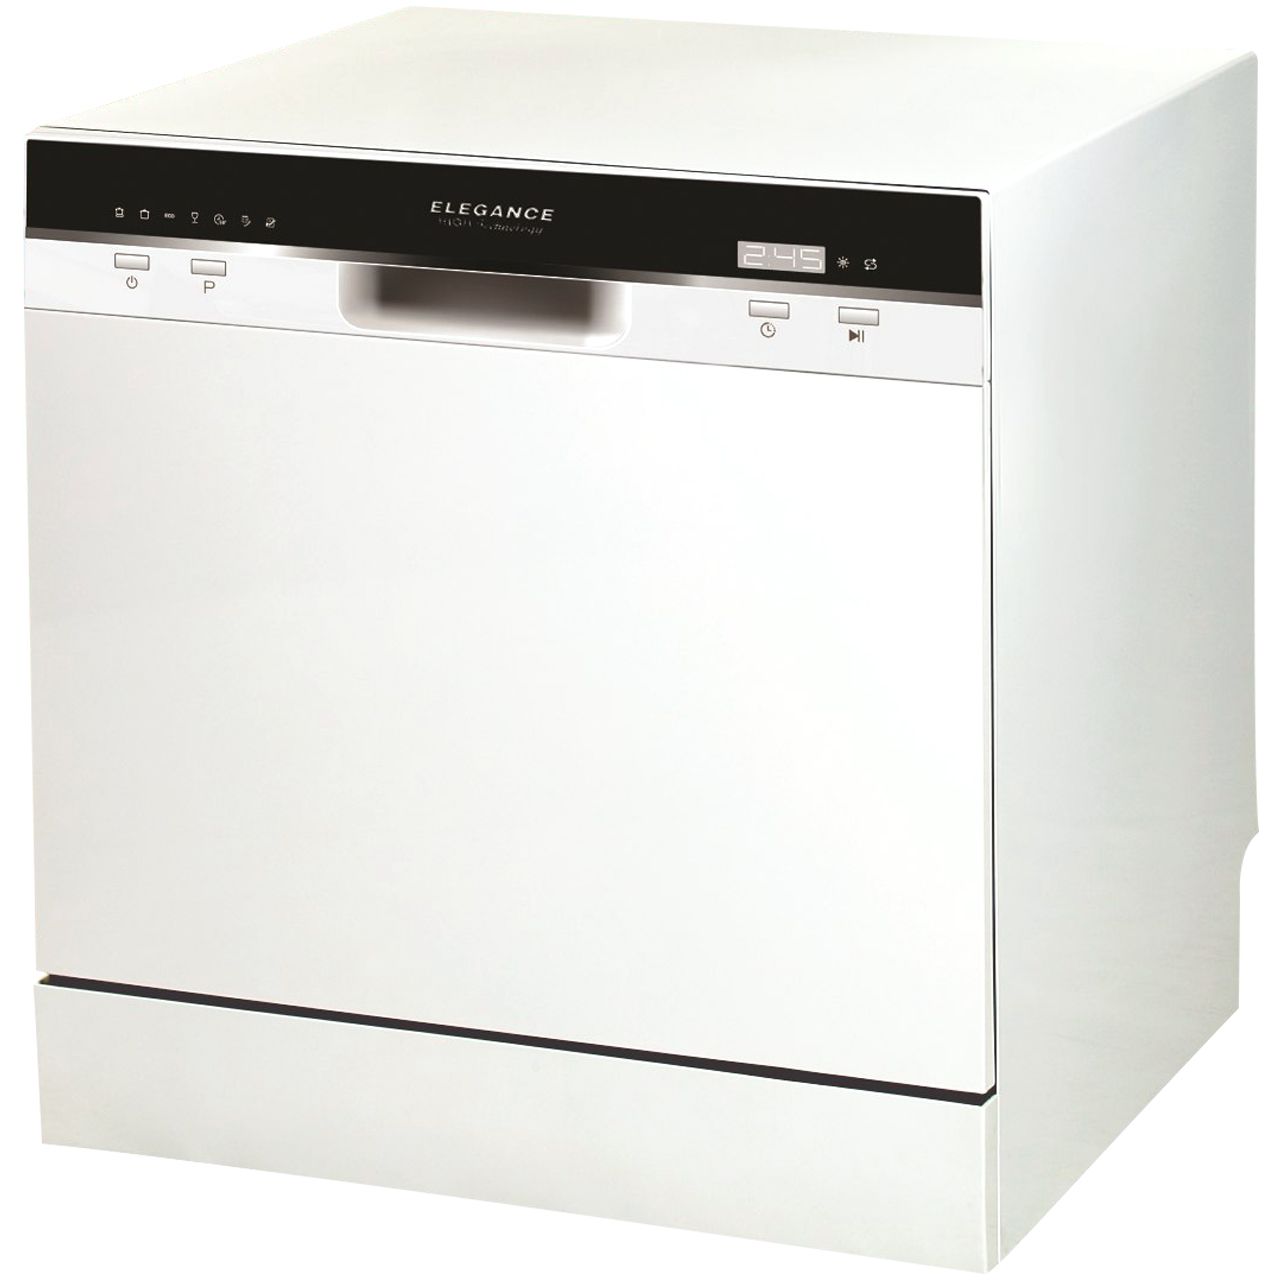 ماشین ظرفشویی الگانس مدل WQP6 مناسب برای 6 نفر